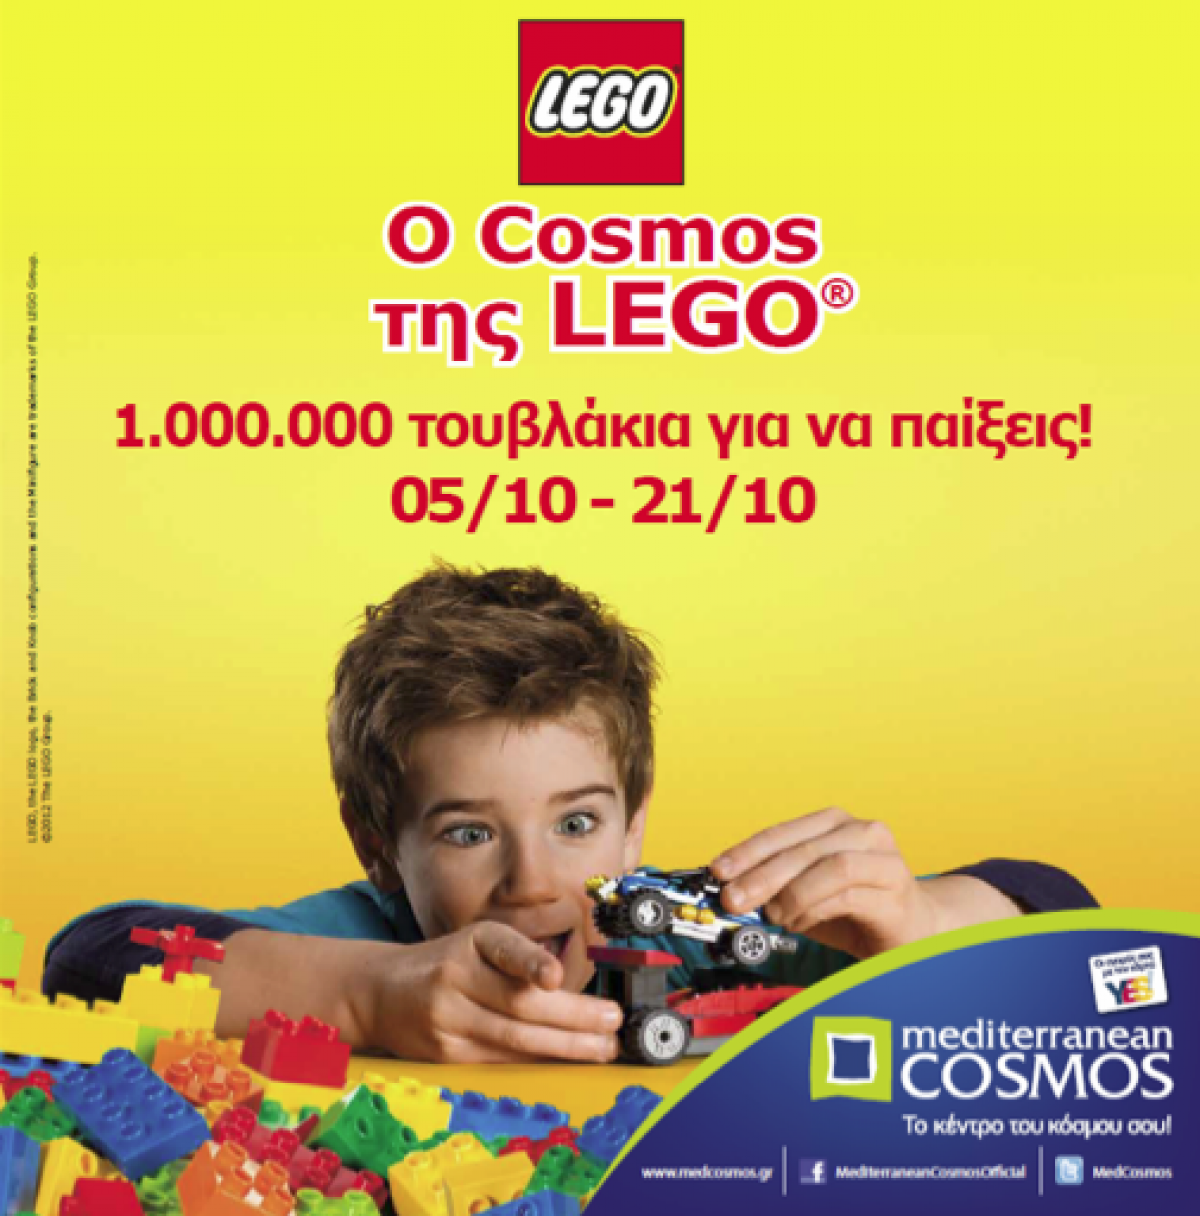 Ο κόσμος της LEGO® στο Mediterranean Cosmos!